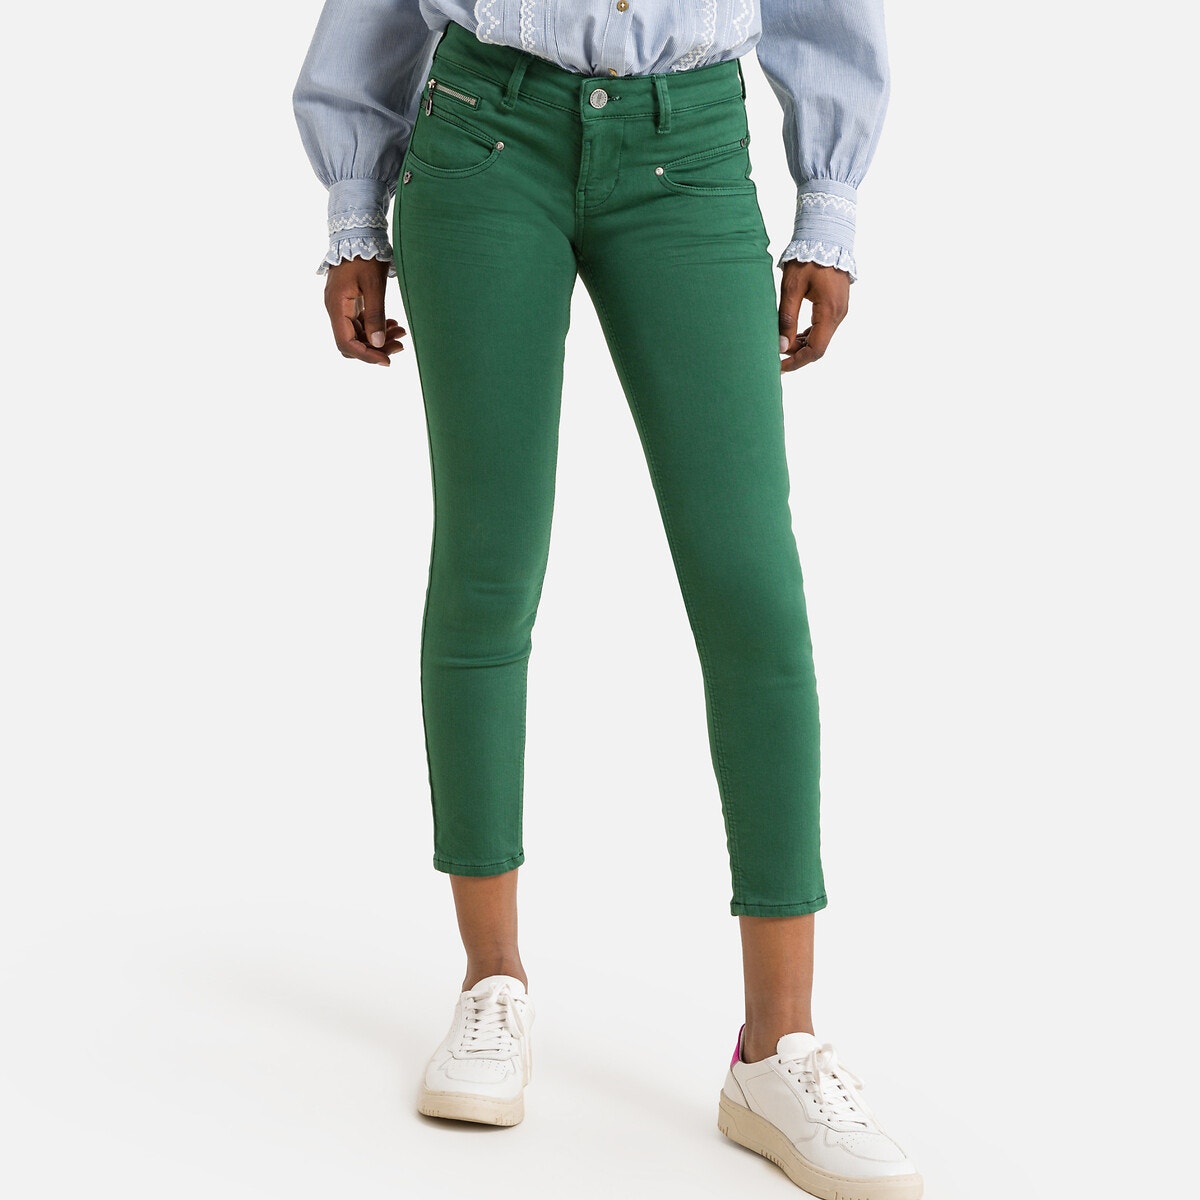 Παντελόνι με κοντό μήκος, Alexa Cropped New Magic Color